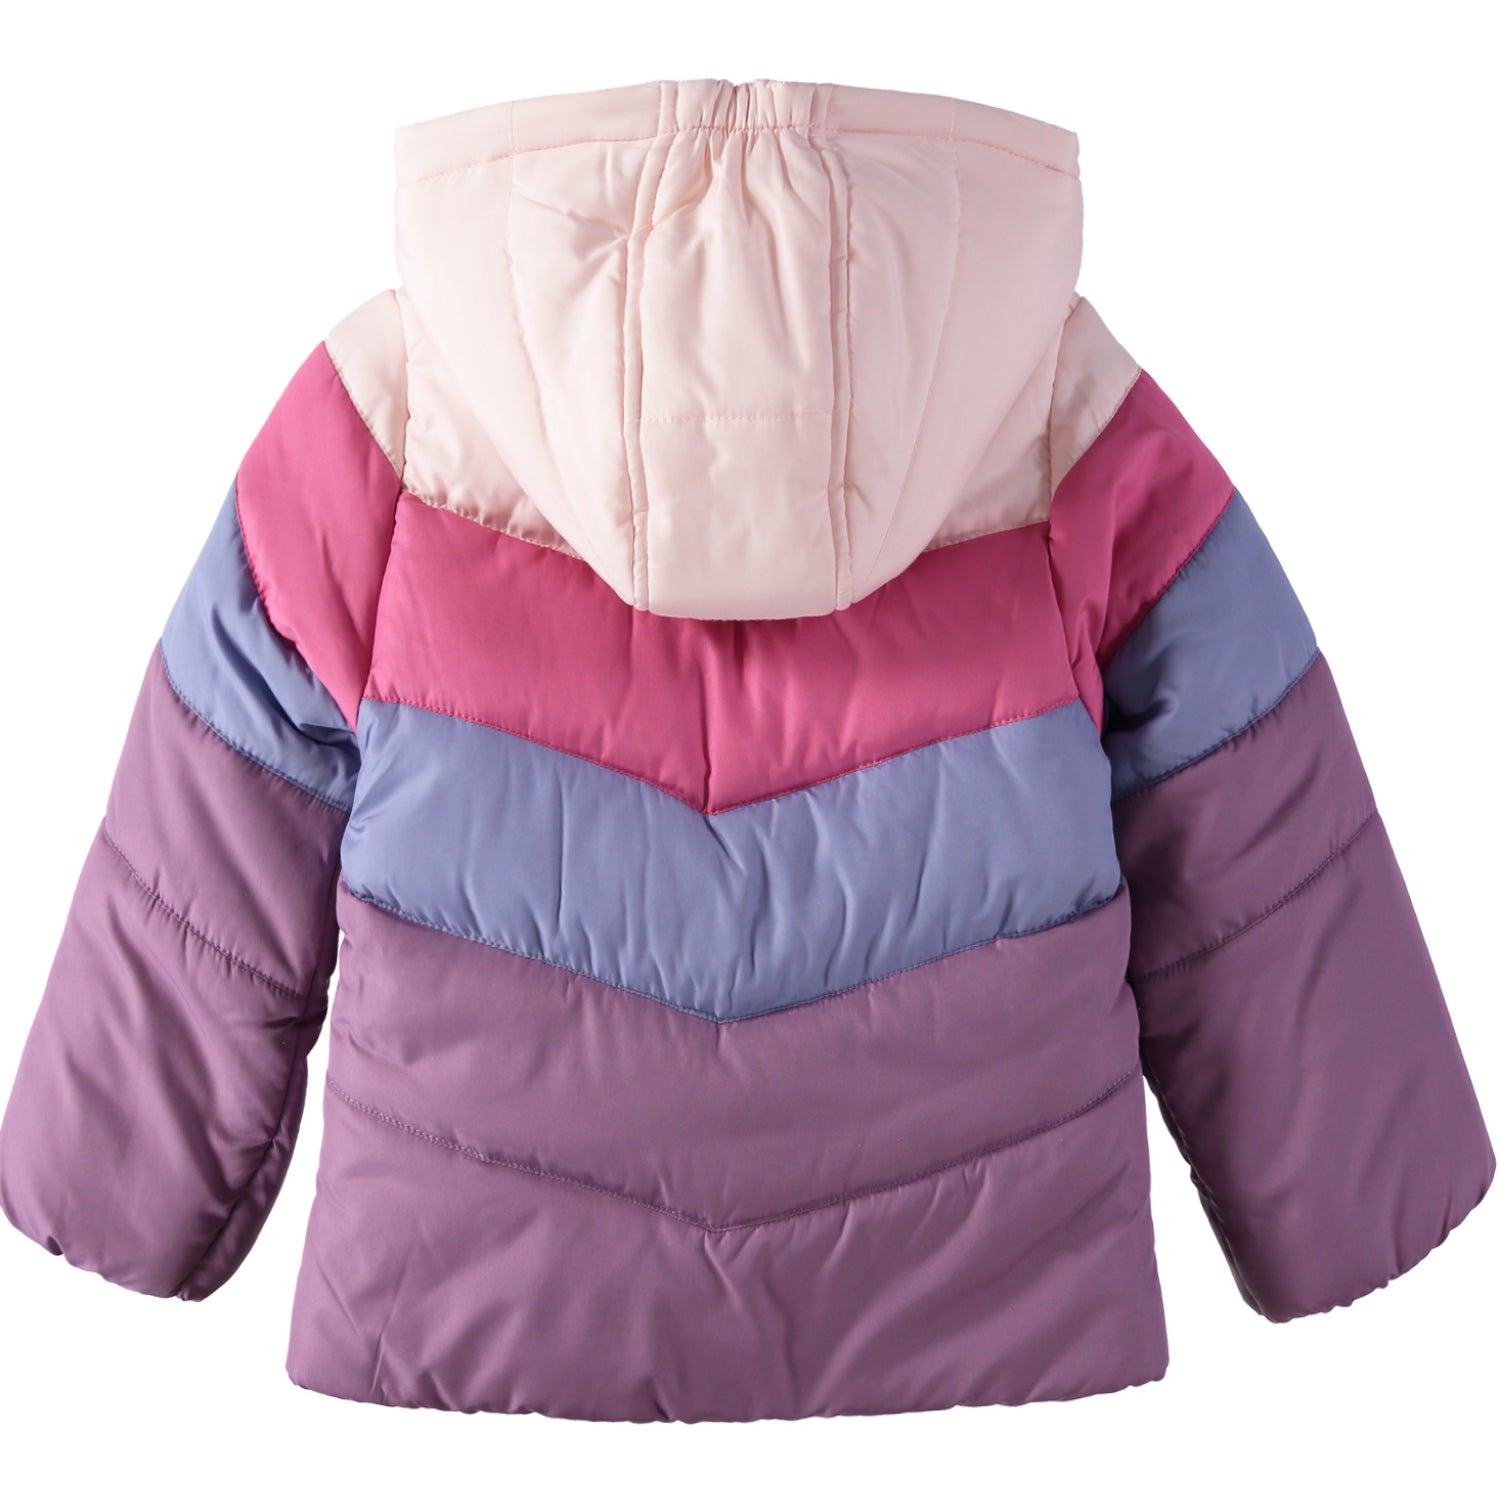 Osh Kosh Girls 7-16 Colorblock Puffer Jacket